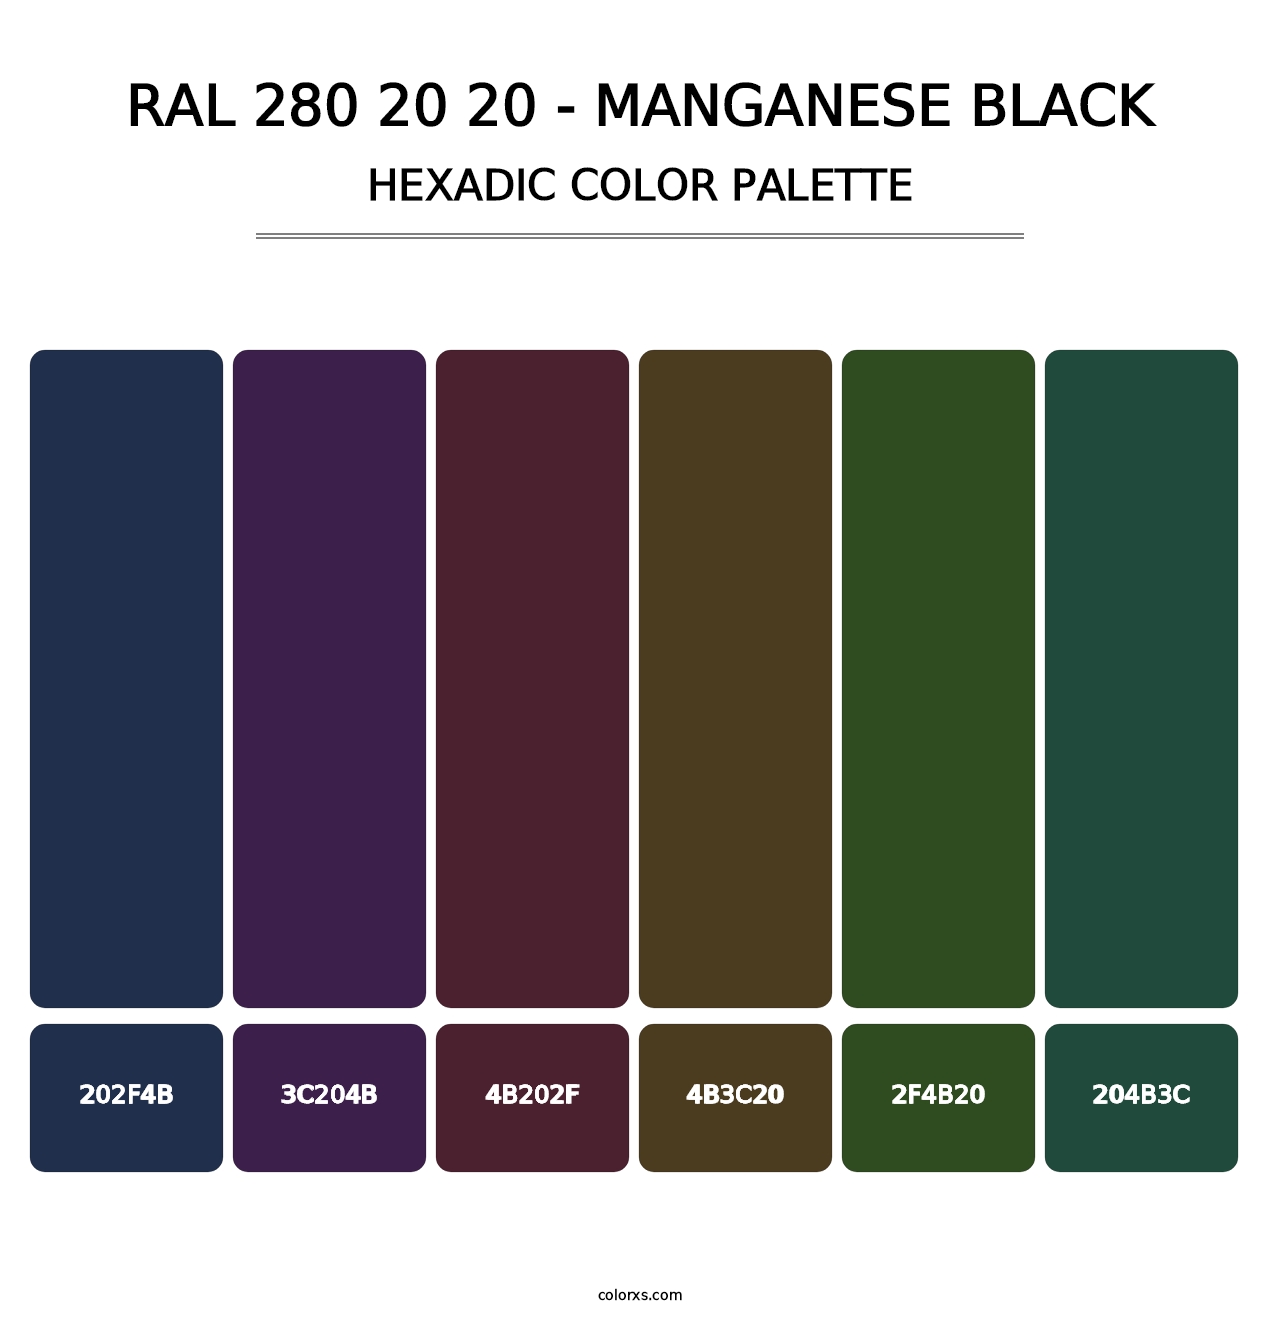 RAL 280 20 20 - Manganese Black - Hexadic Color Palette